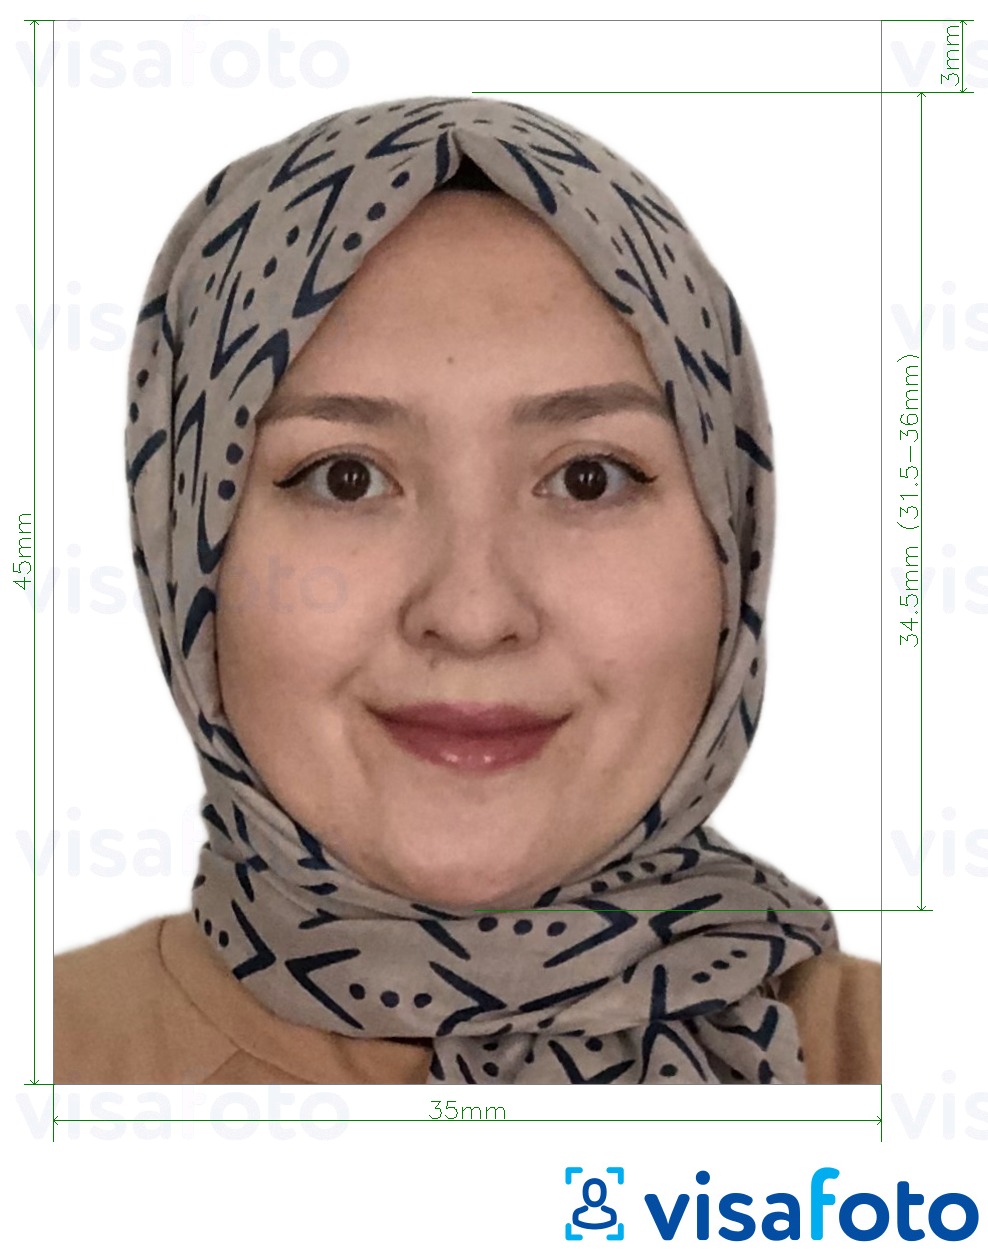 Voorbeeld van foto voor Afghaans visum 35x45 mm (3,5x4,5 cm) met exacte maatspecificatie